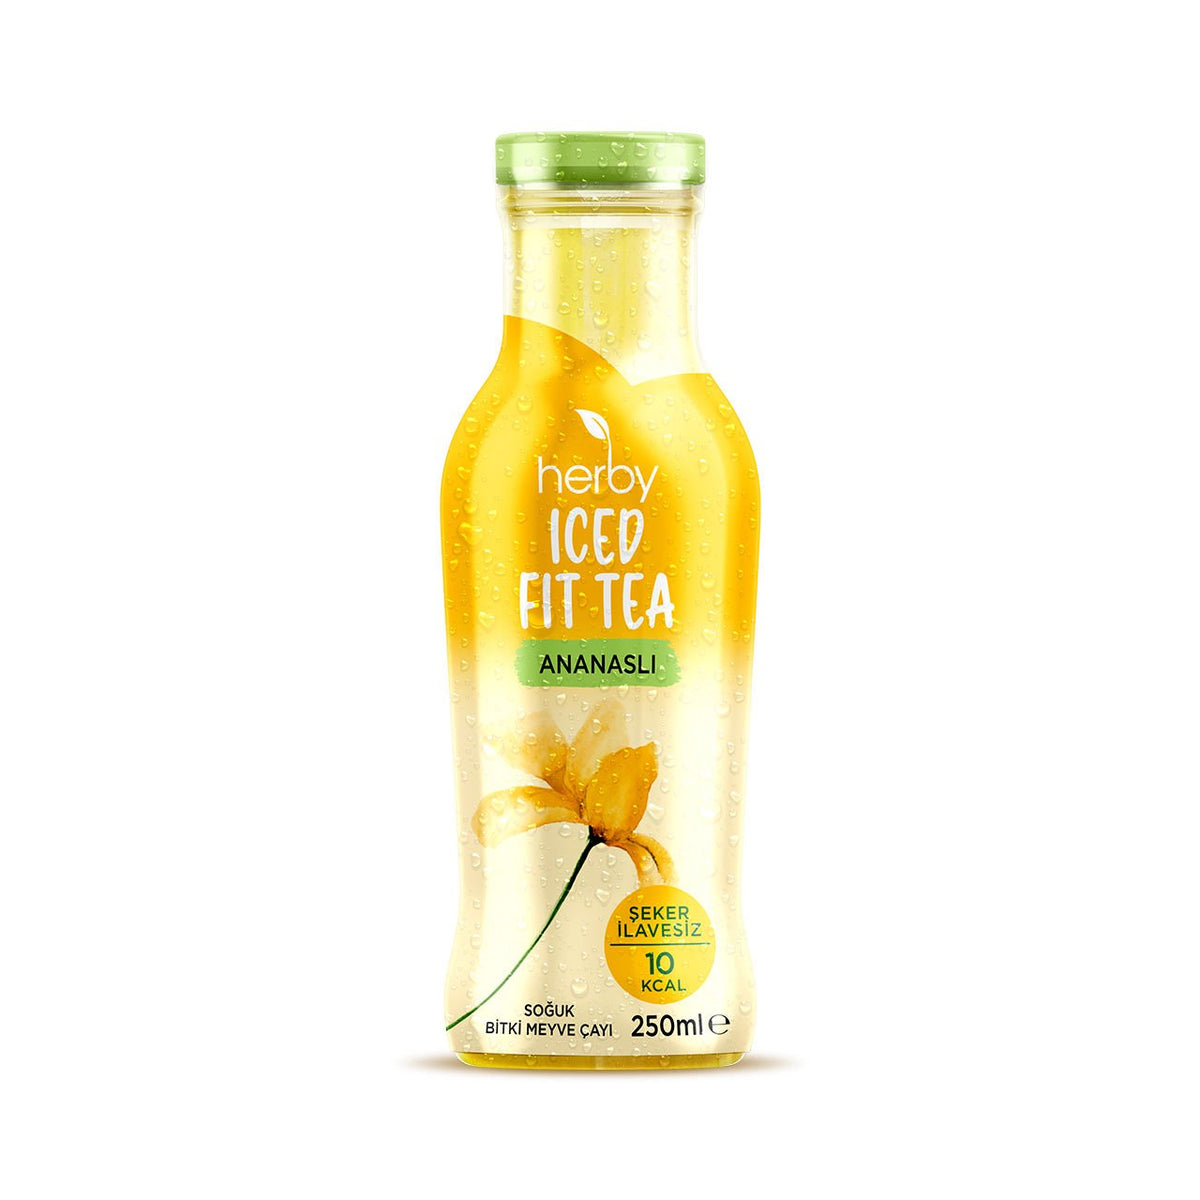 Herby Iced Fit Tea Ananaslı 250 ml